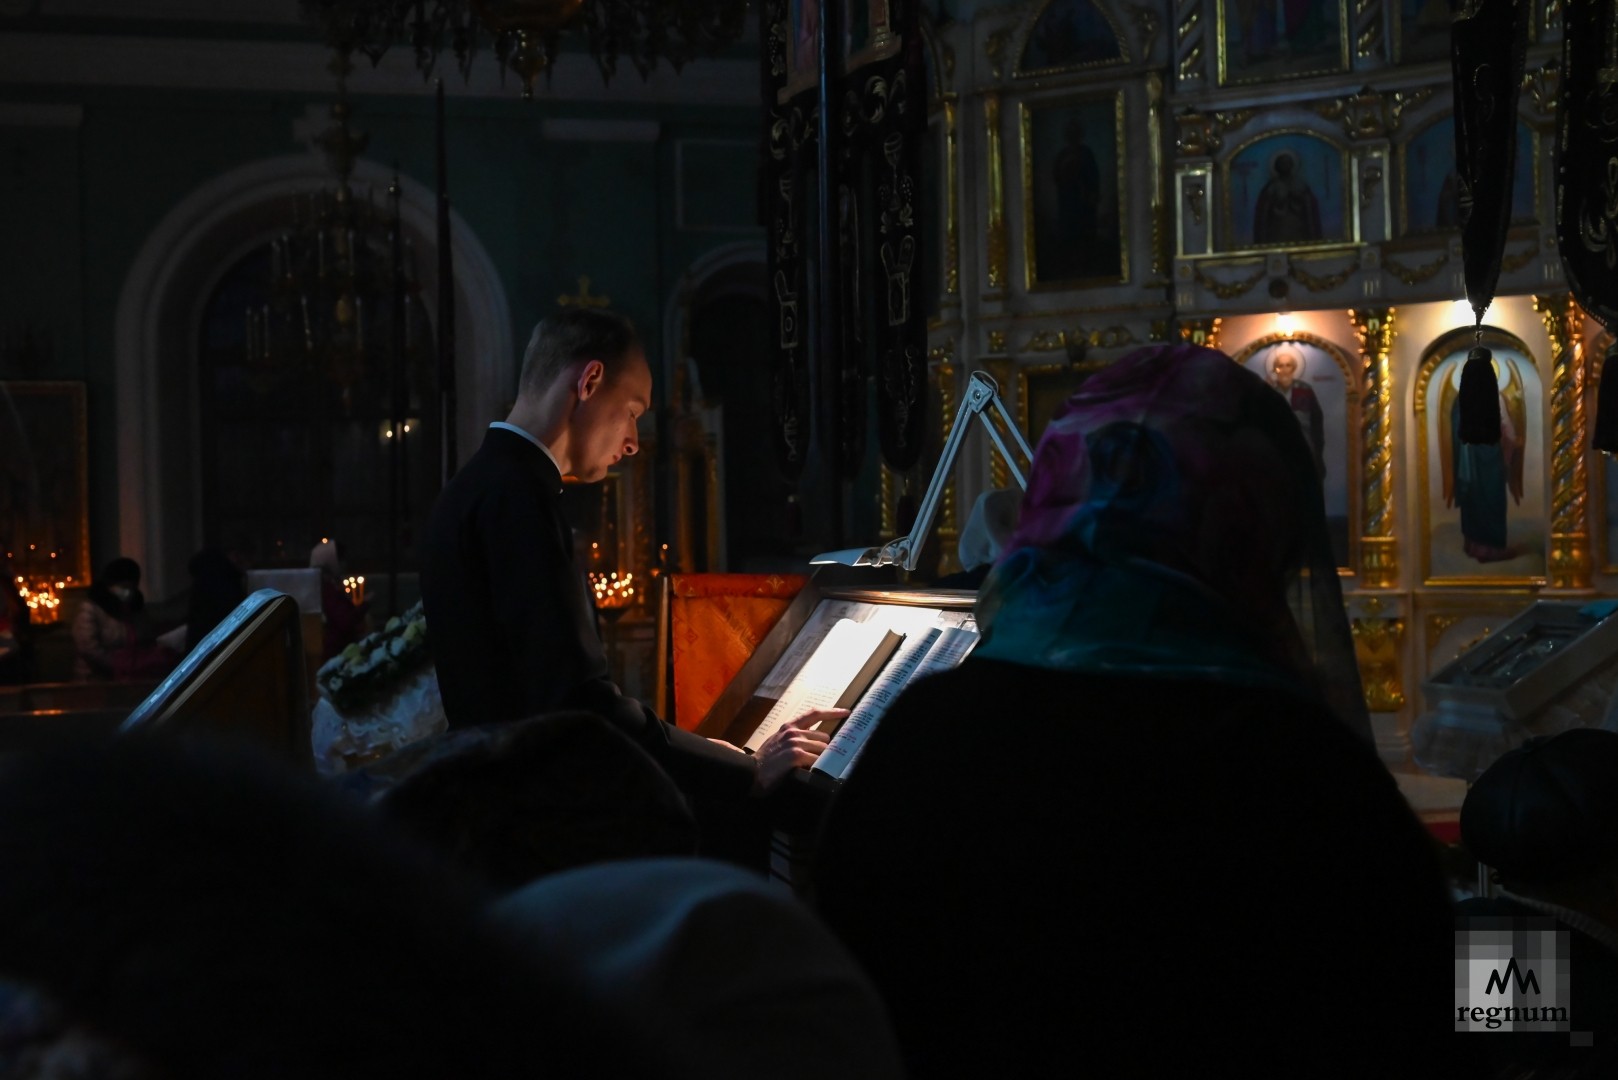 Прихожане на богослужении в Крещенский сочельник в Андреевском соборе, г. Ставрополь